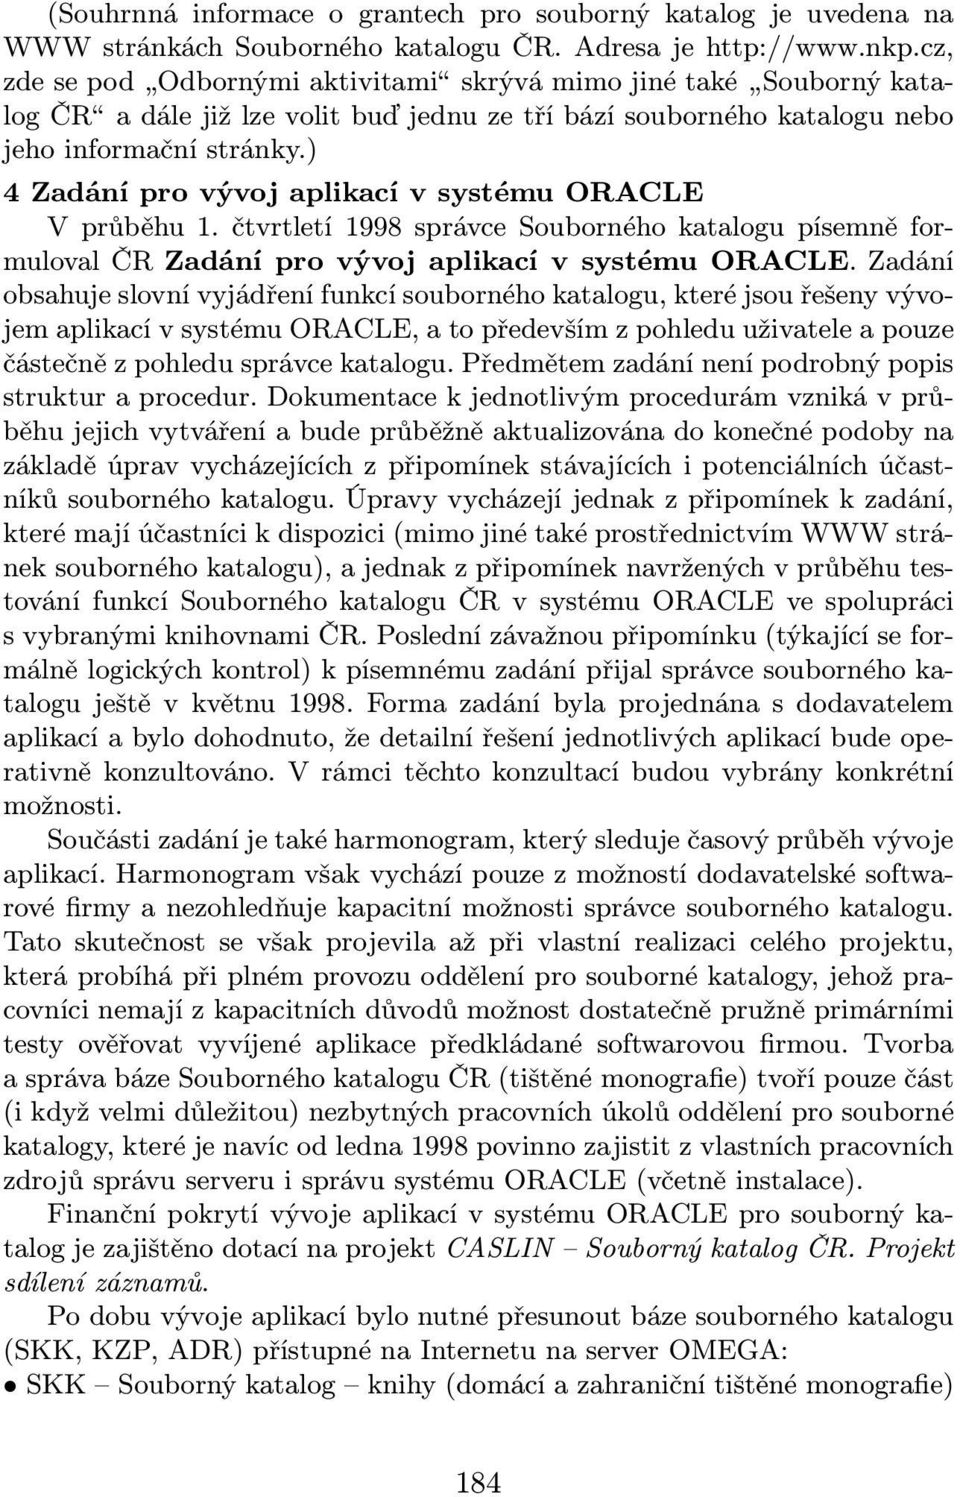 ) 4 Zadání pro vývoj aplikací v systému ORACLE V průběhu 1. čtvrtletí 1998 správce Souborného katalogu písemně formuloval ČR Zadání pro vývoj aplikací v systému ORACLE.